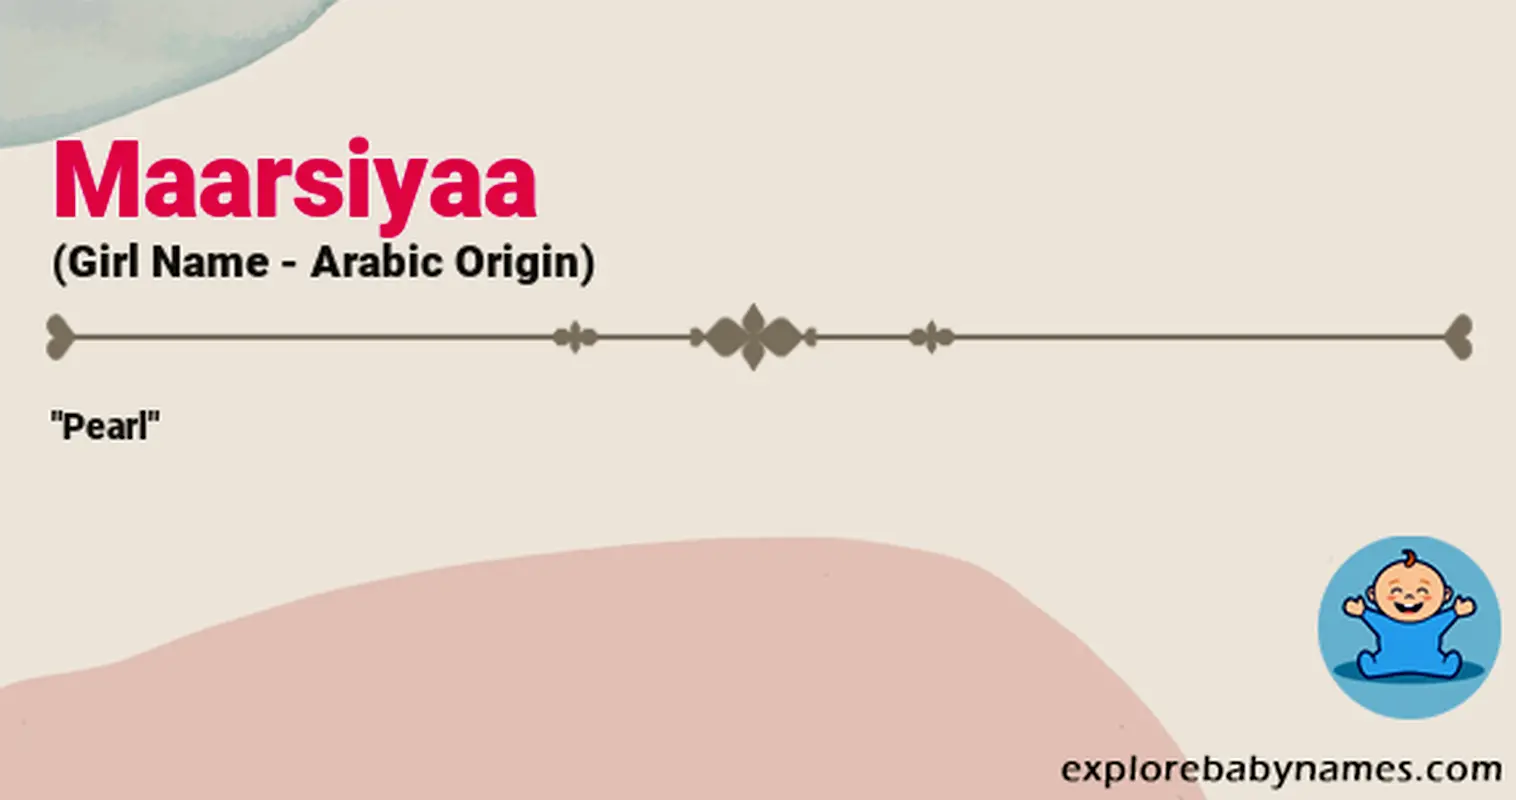 Meaning of Maarsiyaa